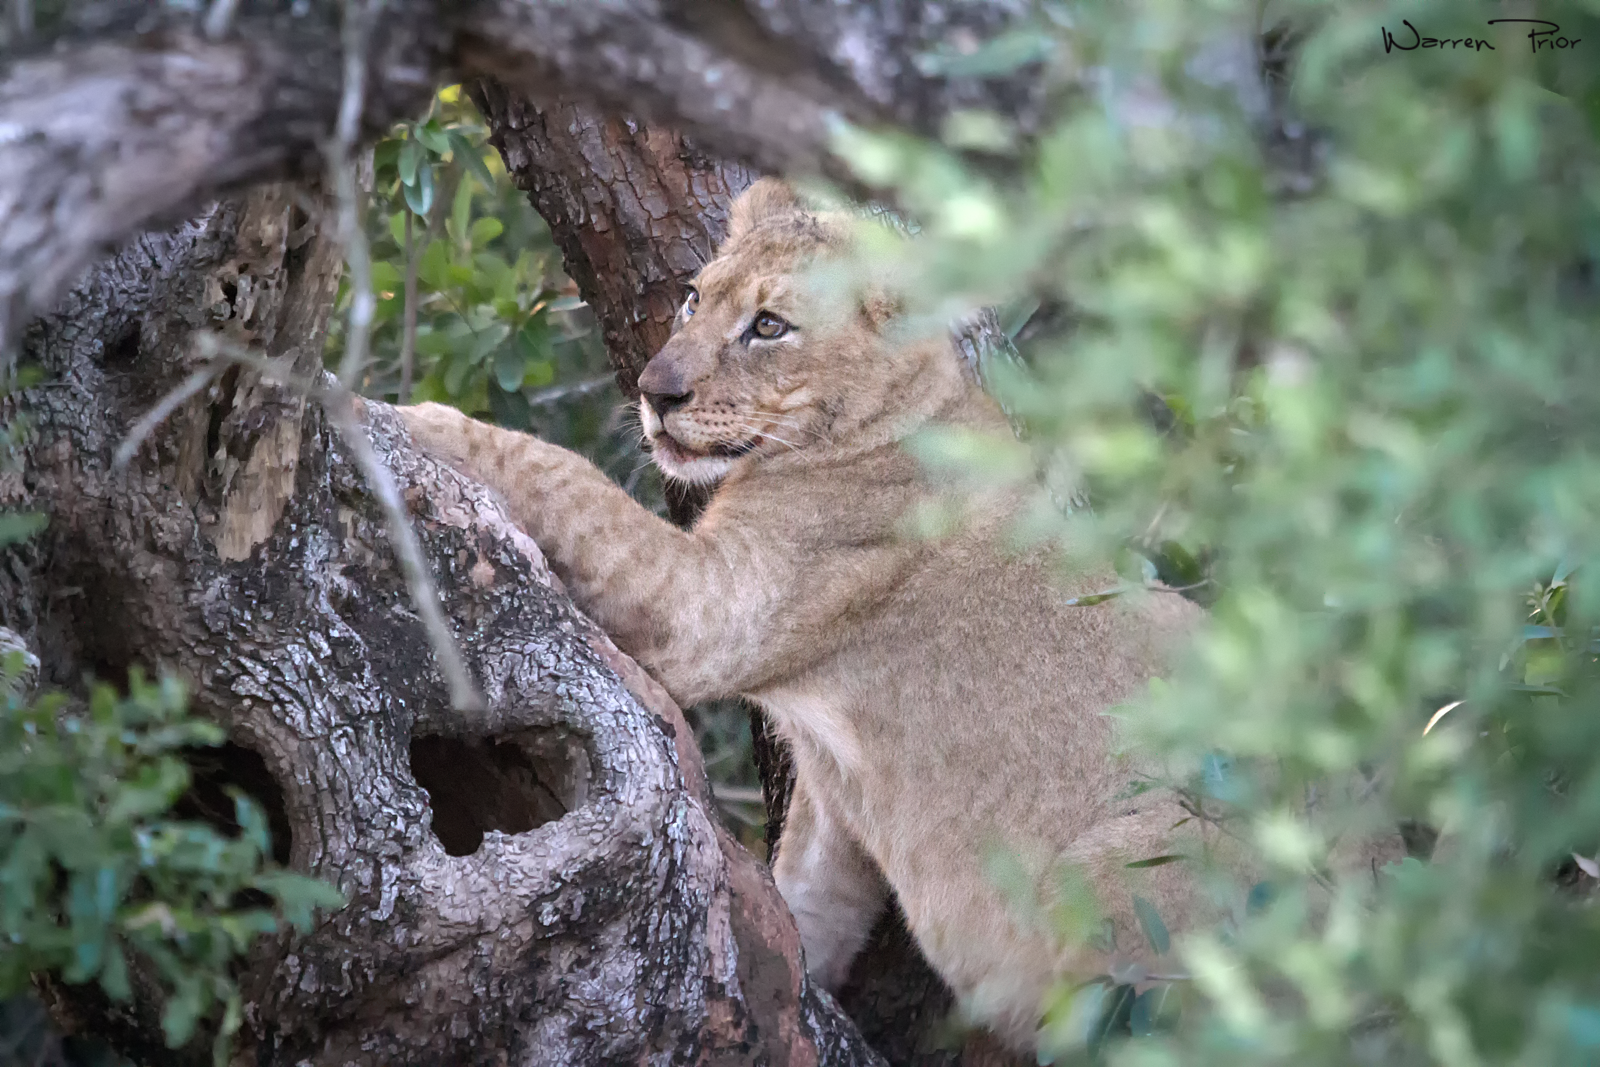 A lion cub climbing a tree